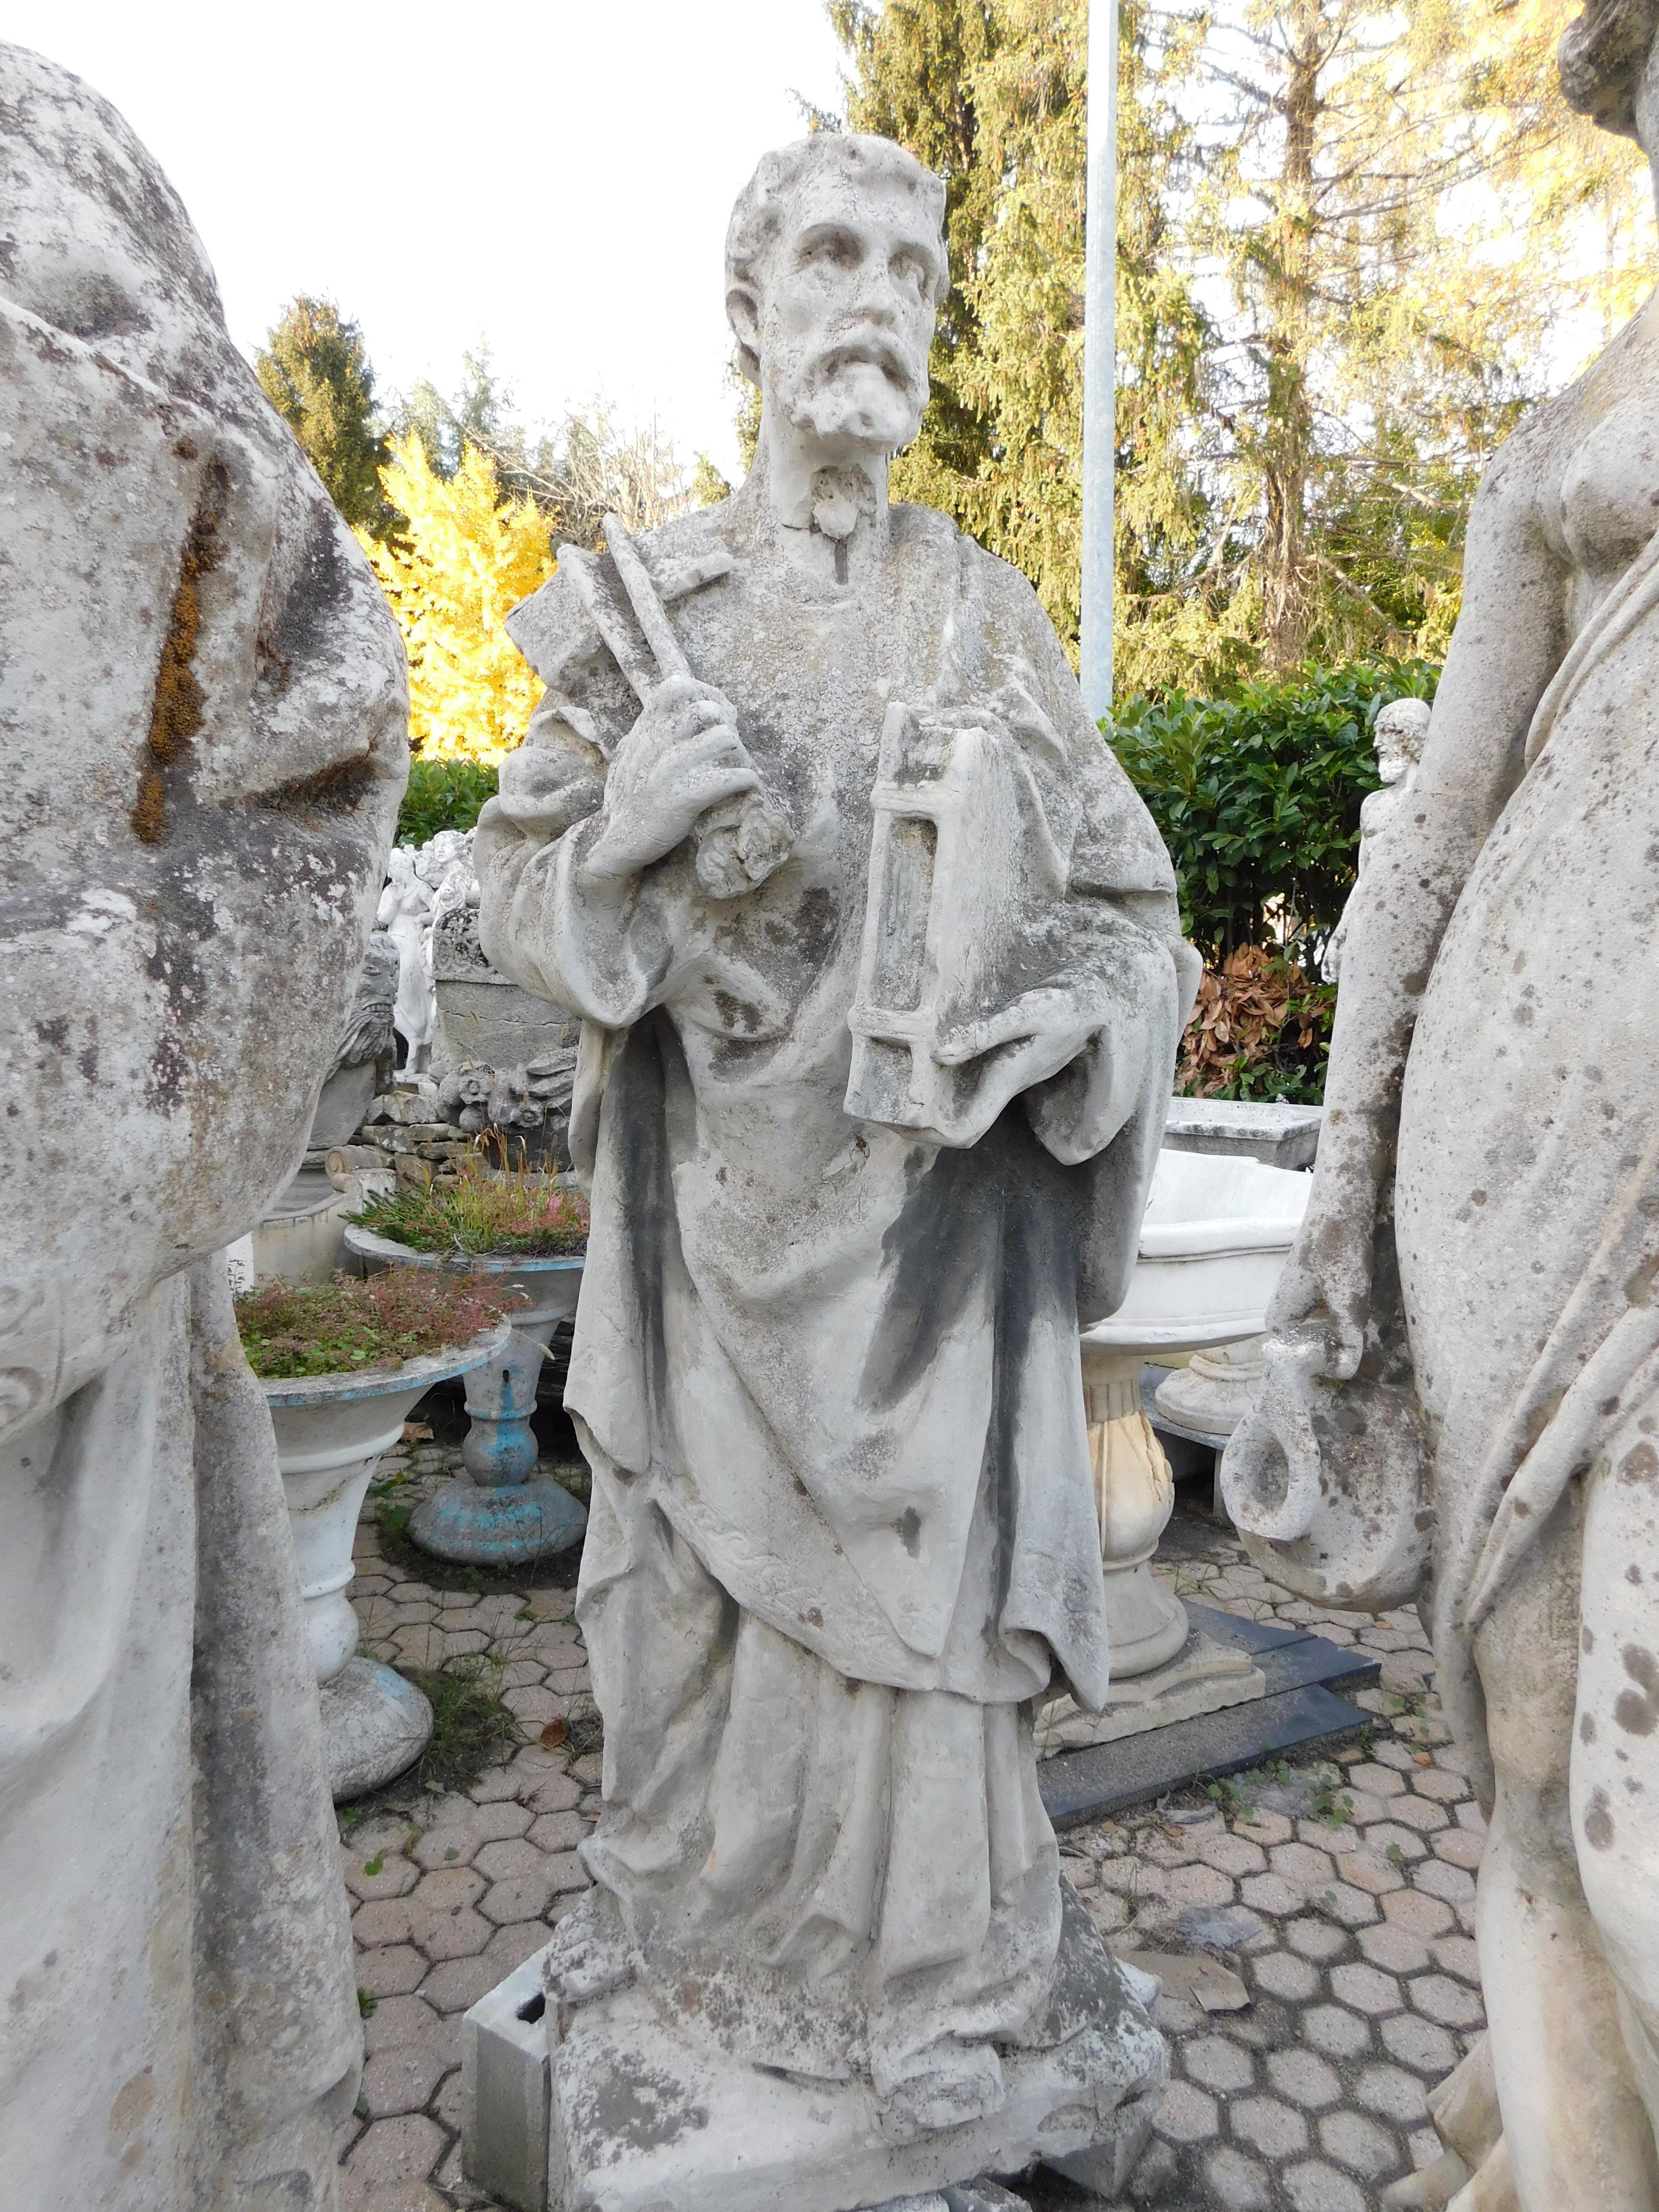 Concrete Pair of outdoor concrete garden statues, depicting Saint Peter and Saint Paul, I